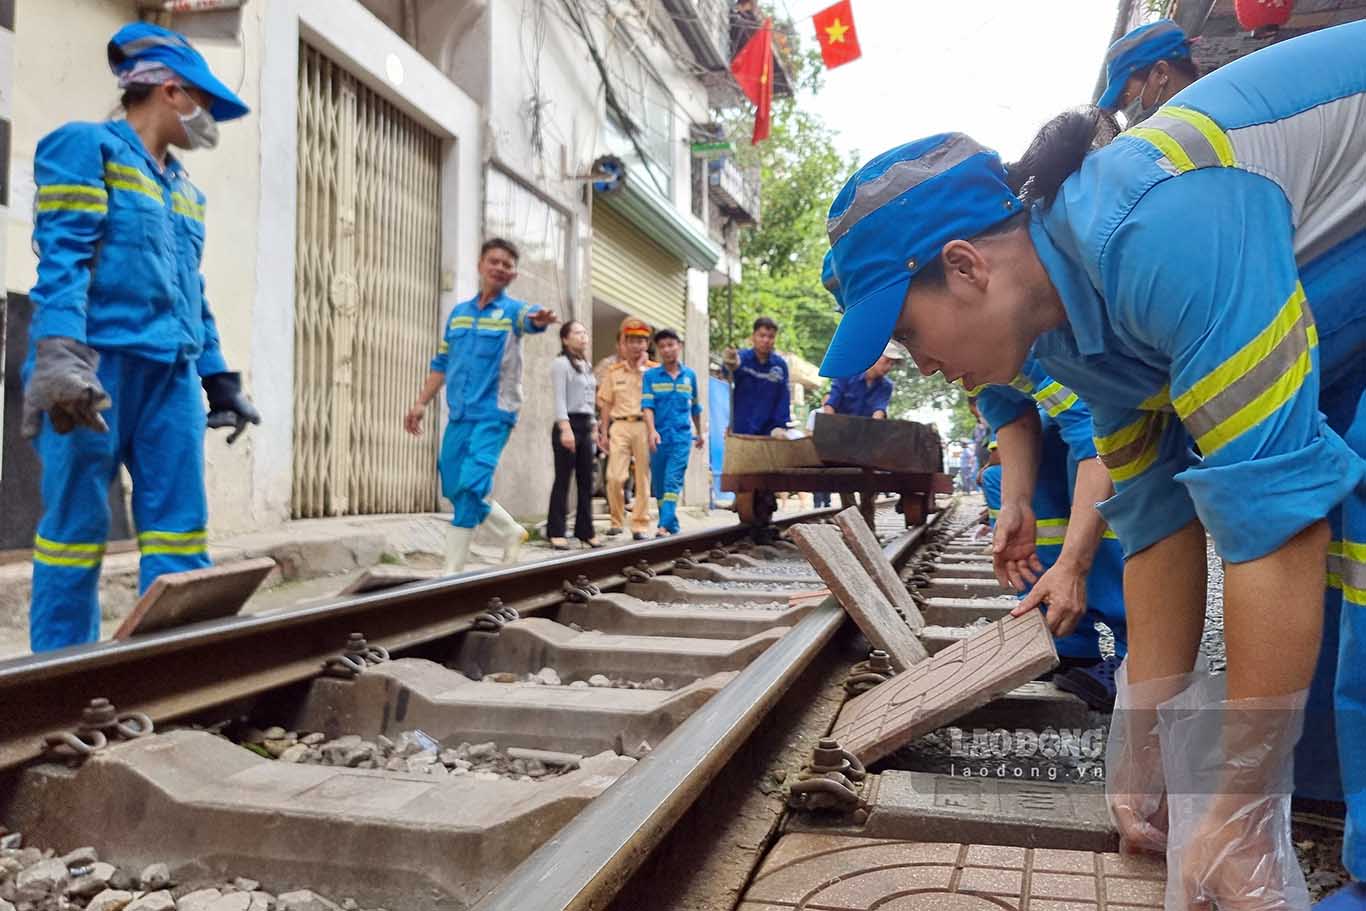 Tổ công tác liên ngành dọn dẹp khu vực đường sắt, đoạn từ gác chắn đường tàu trên phố Khâm Thiên và kết thúc tại đầu ngõ 222 đường Lê Duẩn với chiều dài khoảng 400m. Mọi vật dụng ảnh hưởng đến an toàn đường sắt đều được dẹp bỏ.